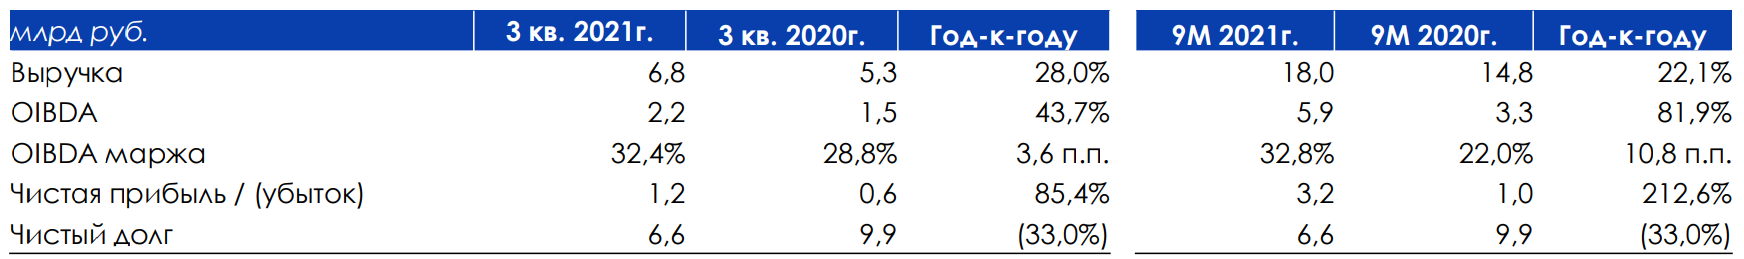 Рис. 5. Финансовые показатели Биннофарм, источник: Финансовые результаты АФК “Система” за 3 квартал 2021 года